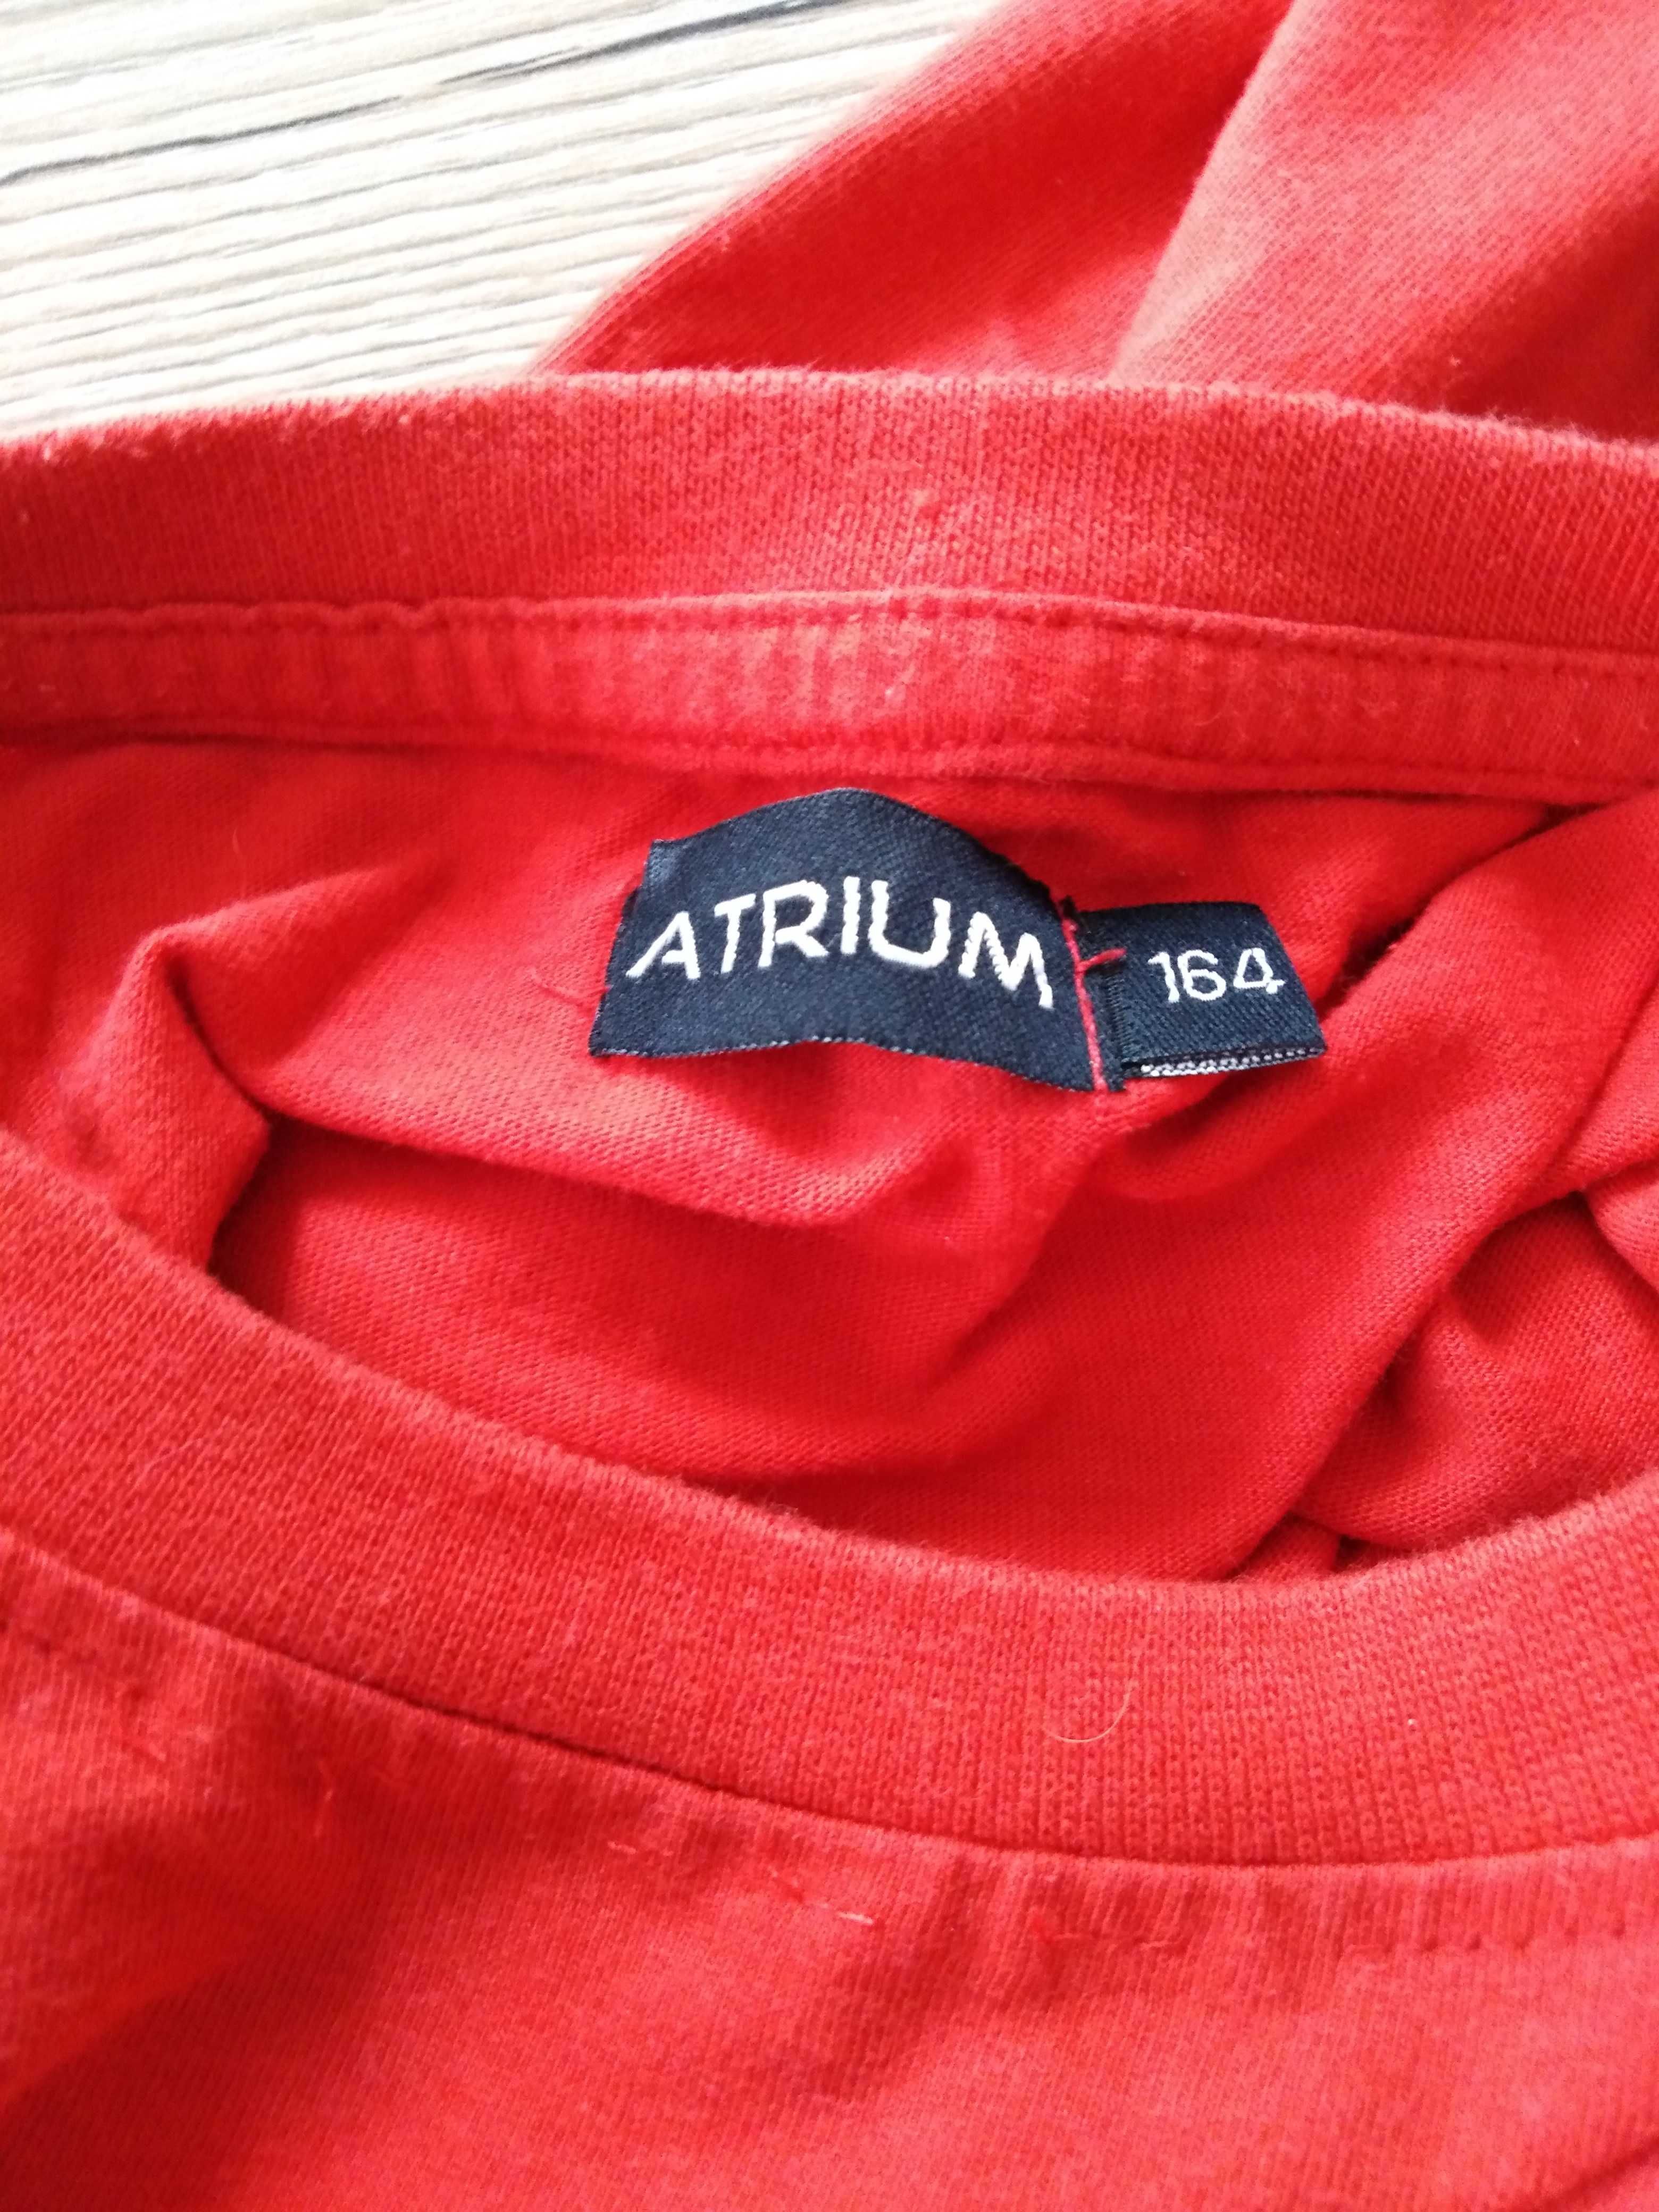 Bluzka czerwona z wzorem ogniowym Atrium rozmiar 164 cm,